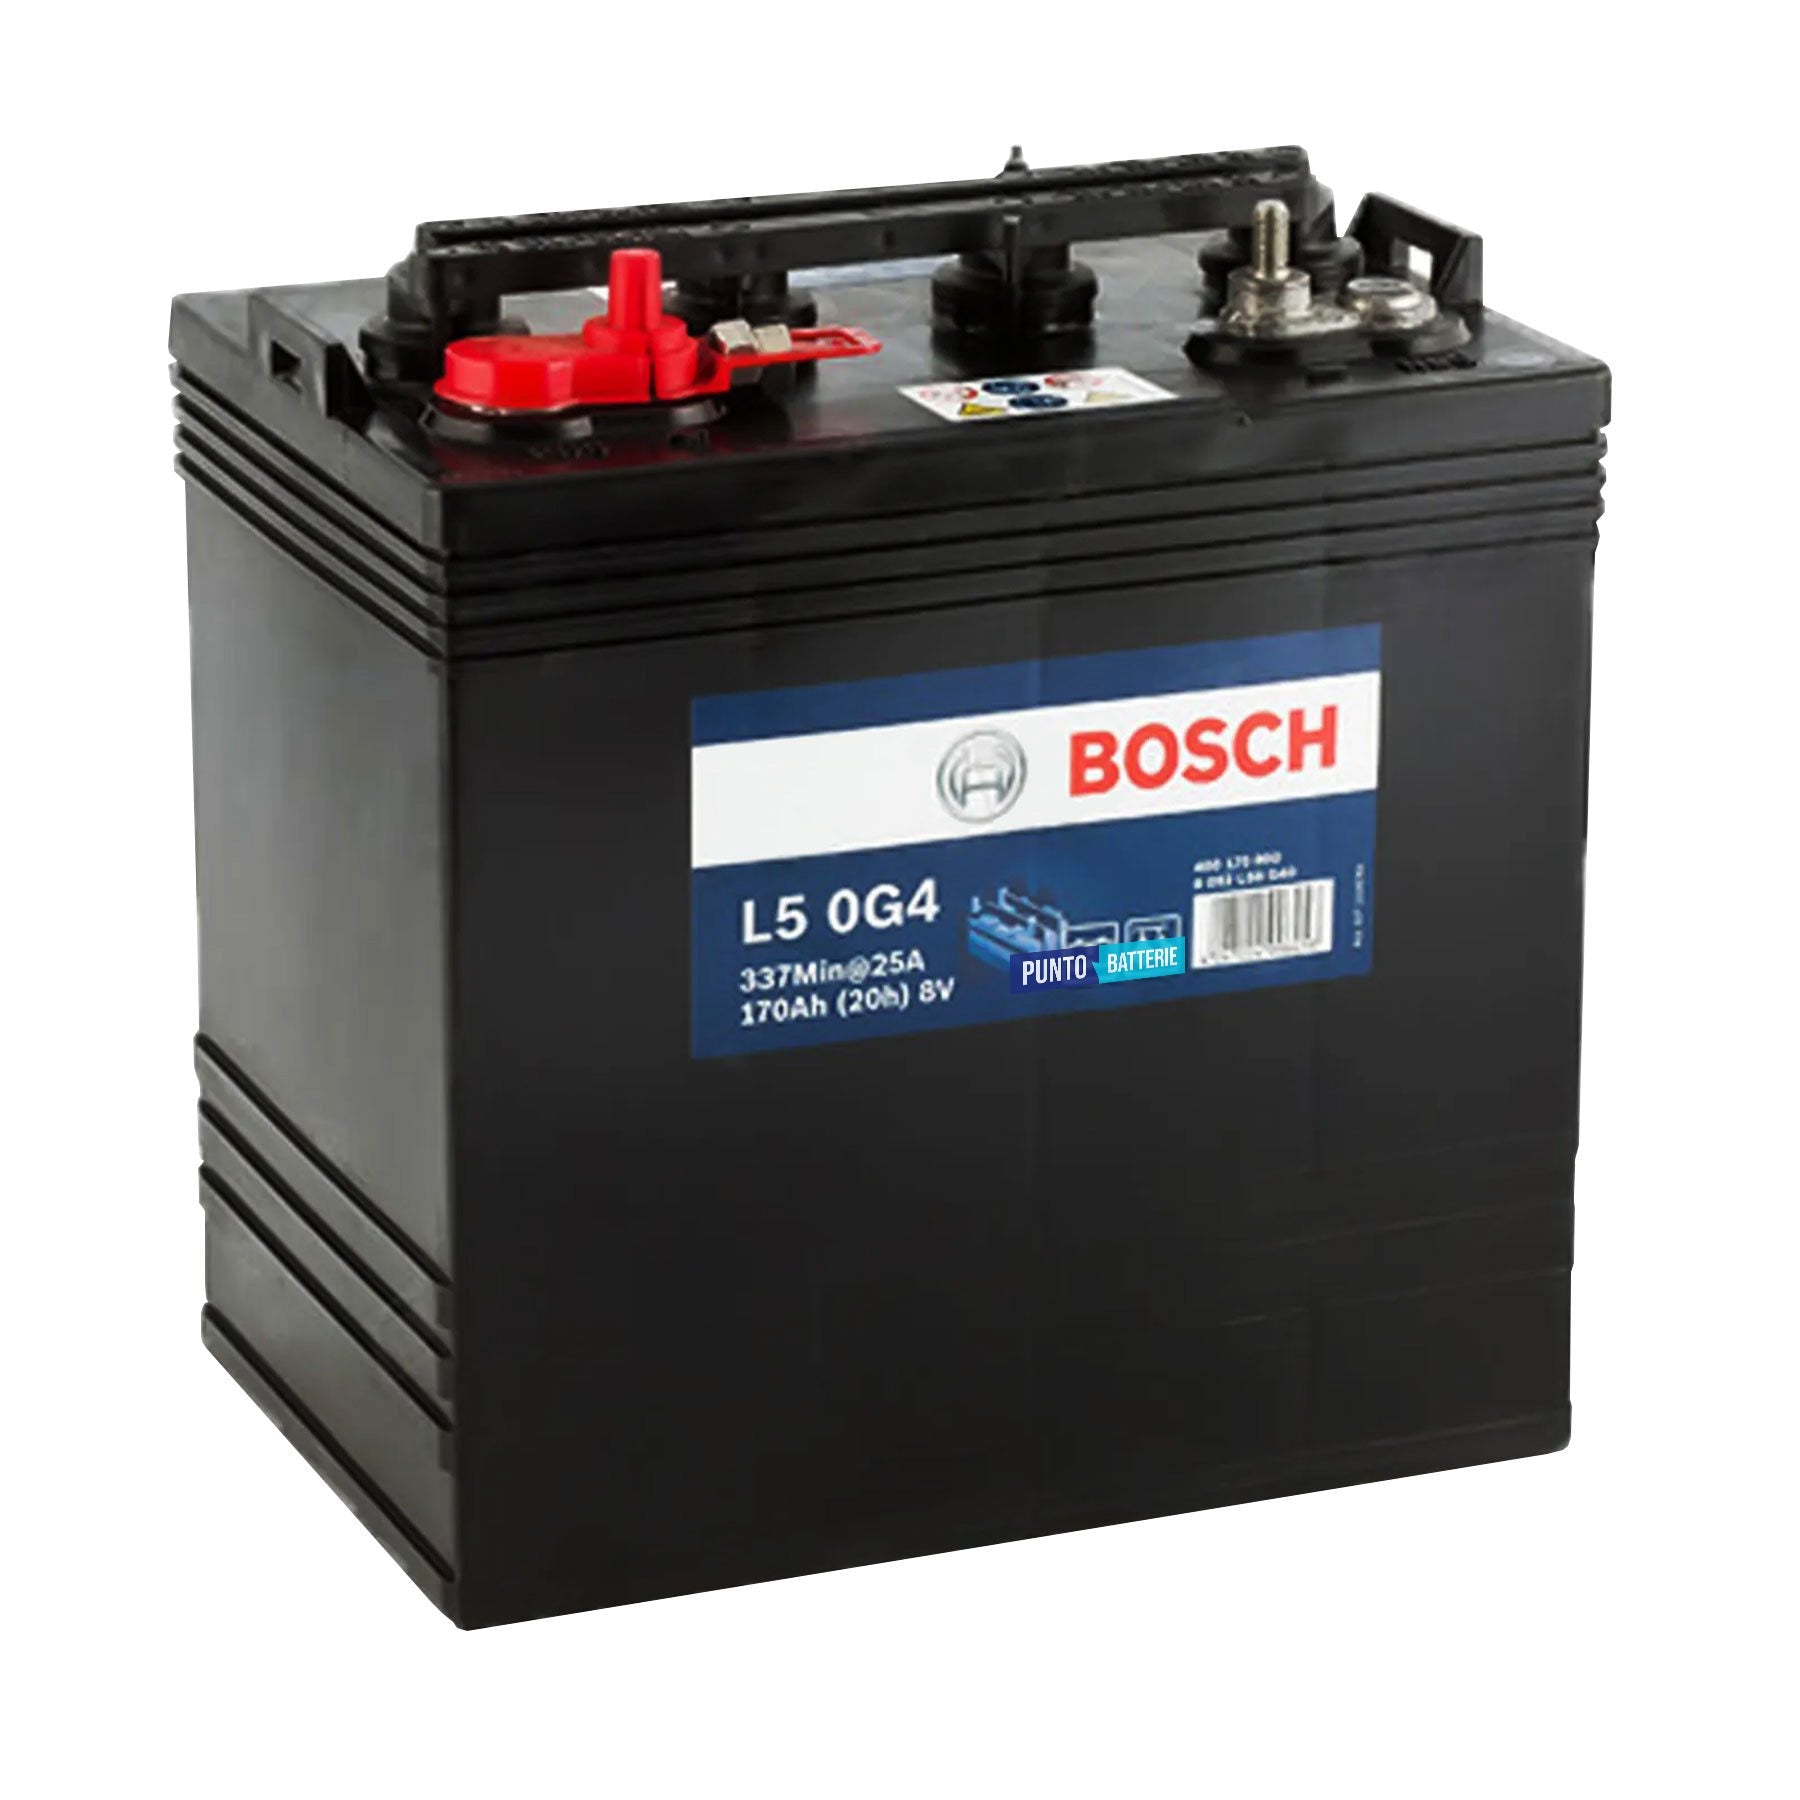 Batteria originale Bosch L5G L5 0G4, dimensioni 261 x 181 x 288, 8 volt, 170 amperora. Batteria per servizi di camper, barca e applicazioni a scarica lenta.